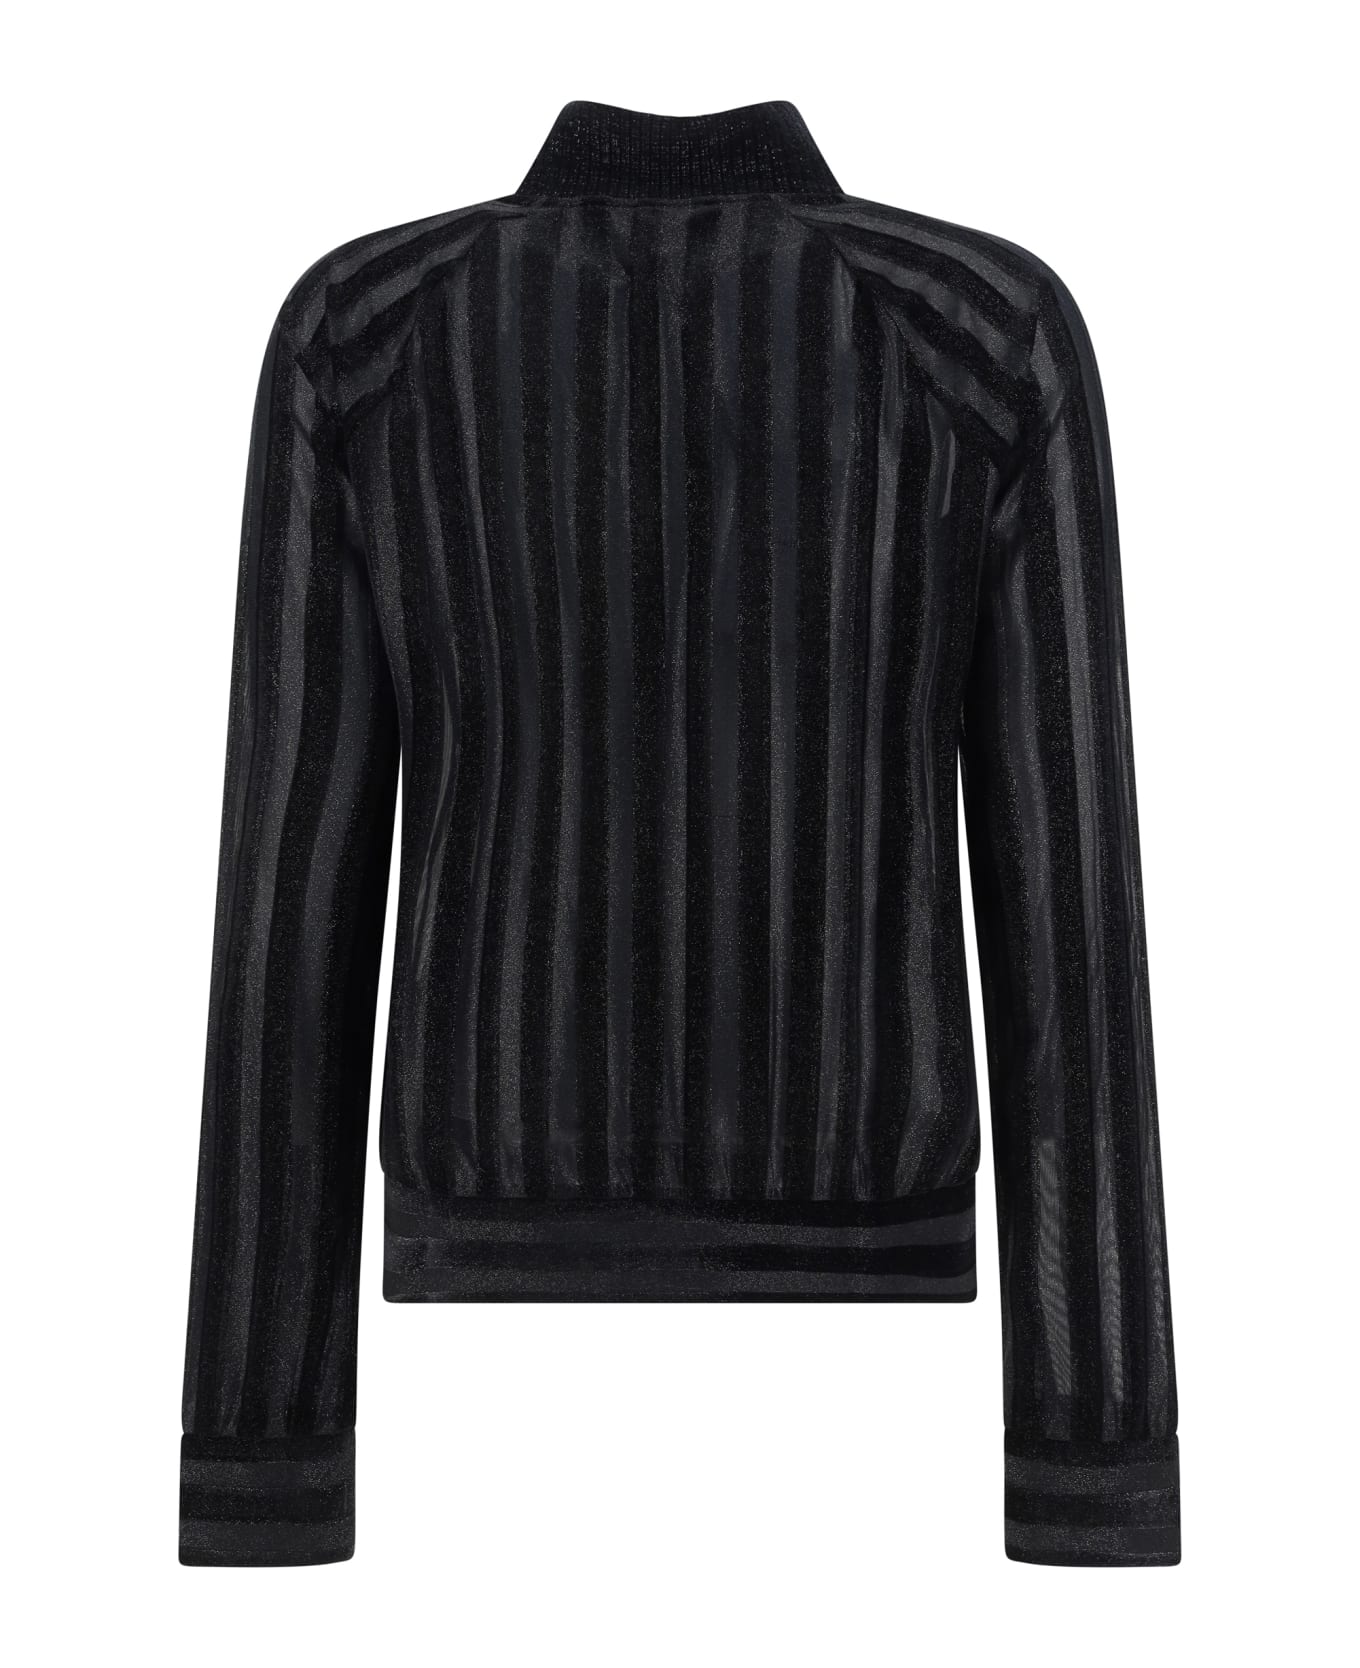 Balmain Turtleneck Sweater - Noir/argent ニットウェア